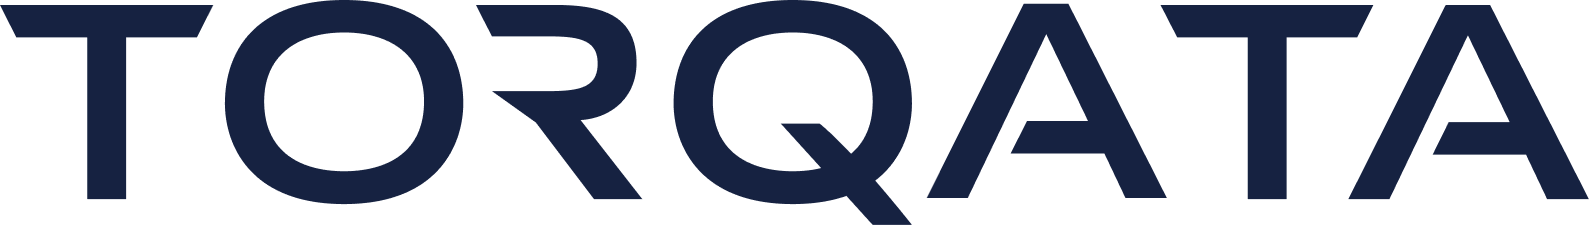 TQA logo-full-dark blue.png